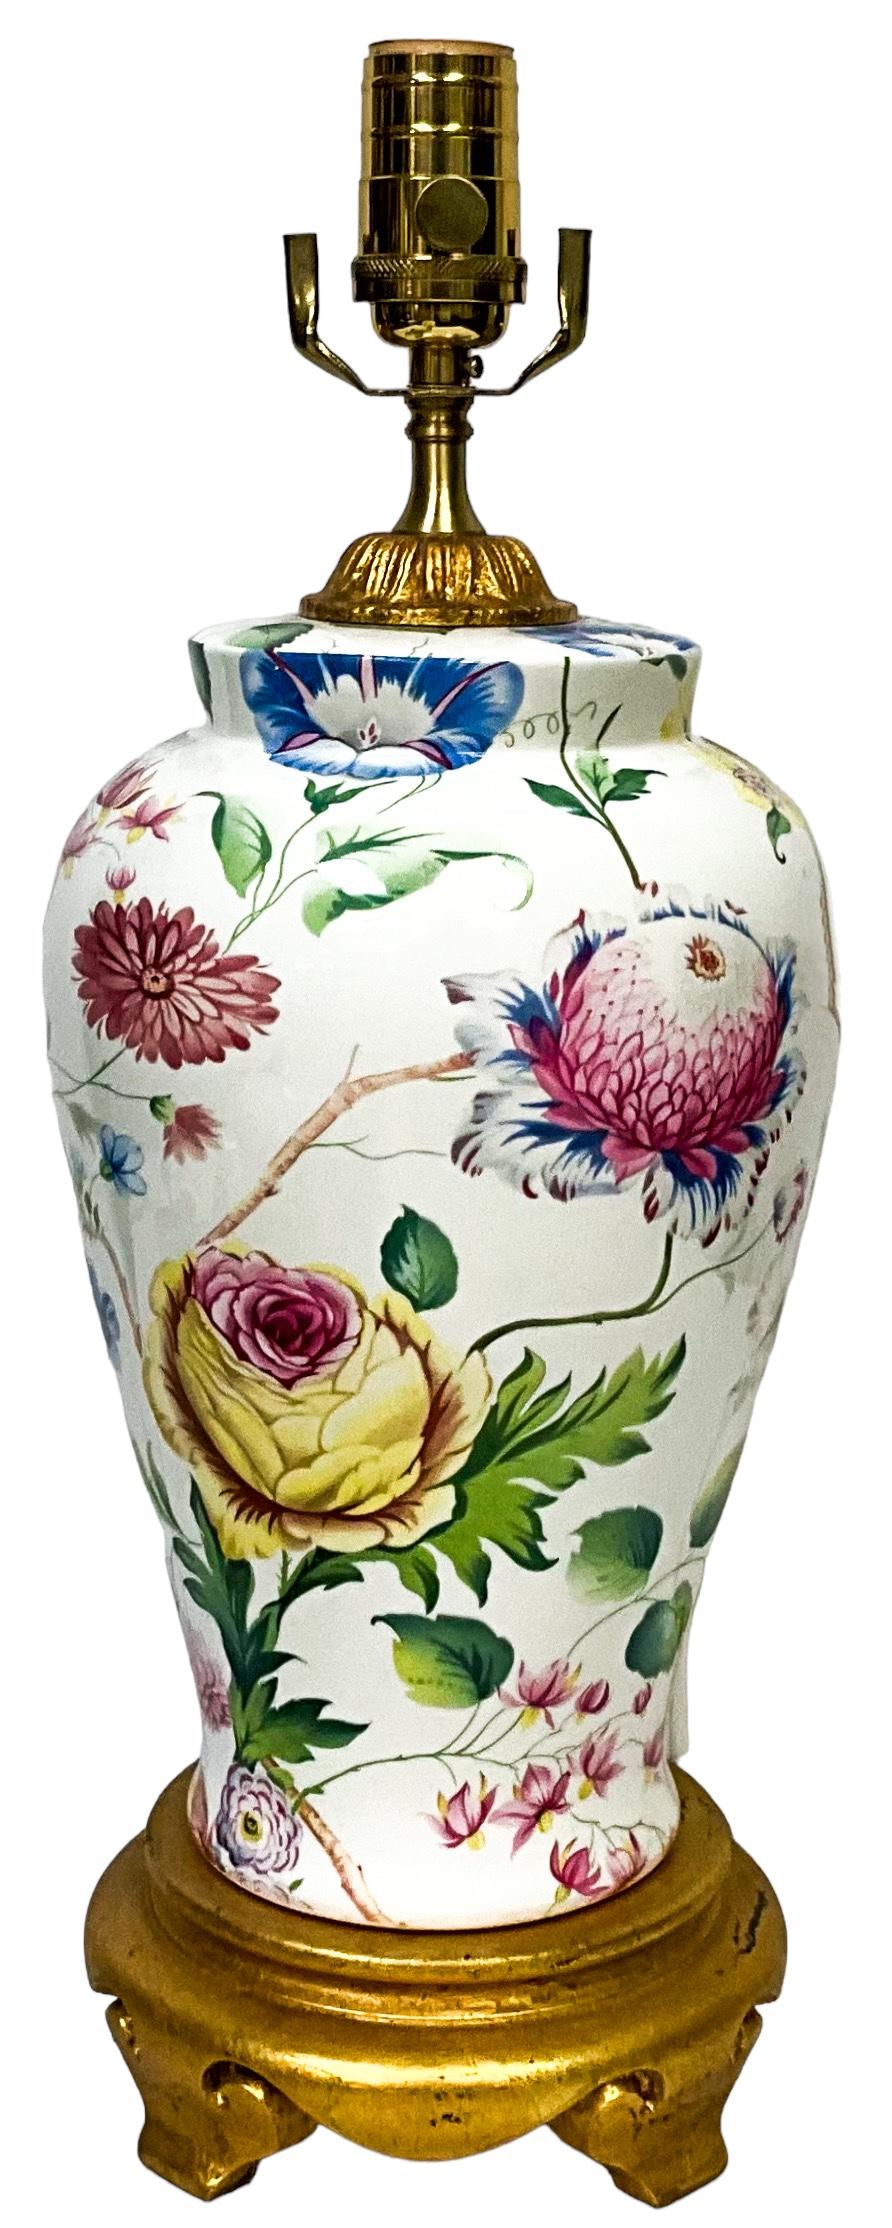 Dies ist ein schönes Paar von Porzellan Ingwer-Glas Form handbemalt Tischlampen zugeschrieben Chelsea House. Die Vase Teil ist 12 Zoll in der Höhe. Sie stehen auf vergoldeten asiatischen Fußsockeln. Der Korpus zeigt eine Vielzahl von rosa, blauen